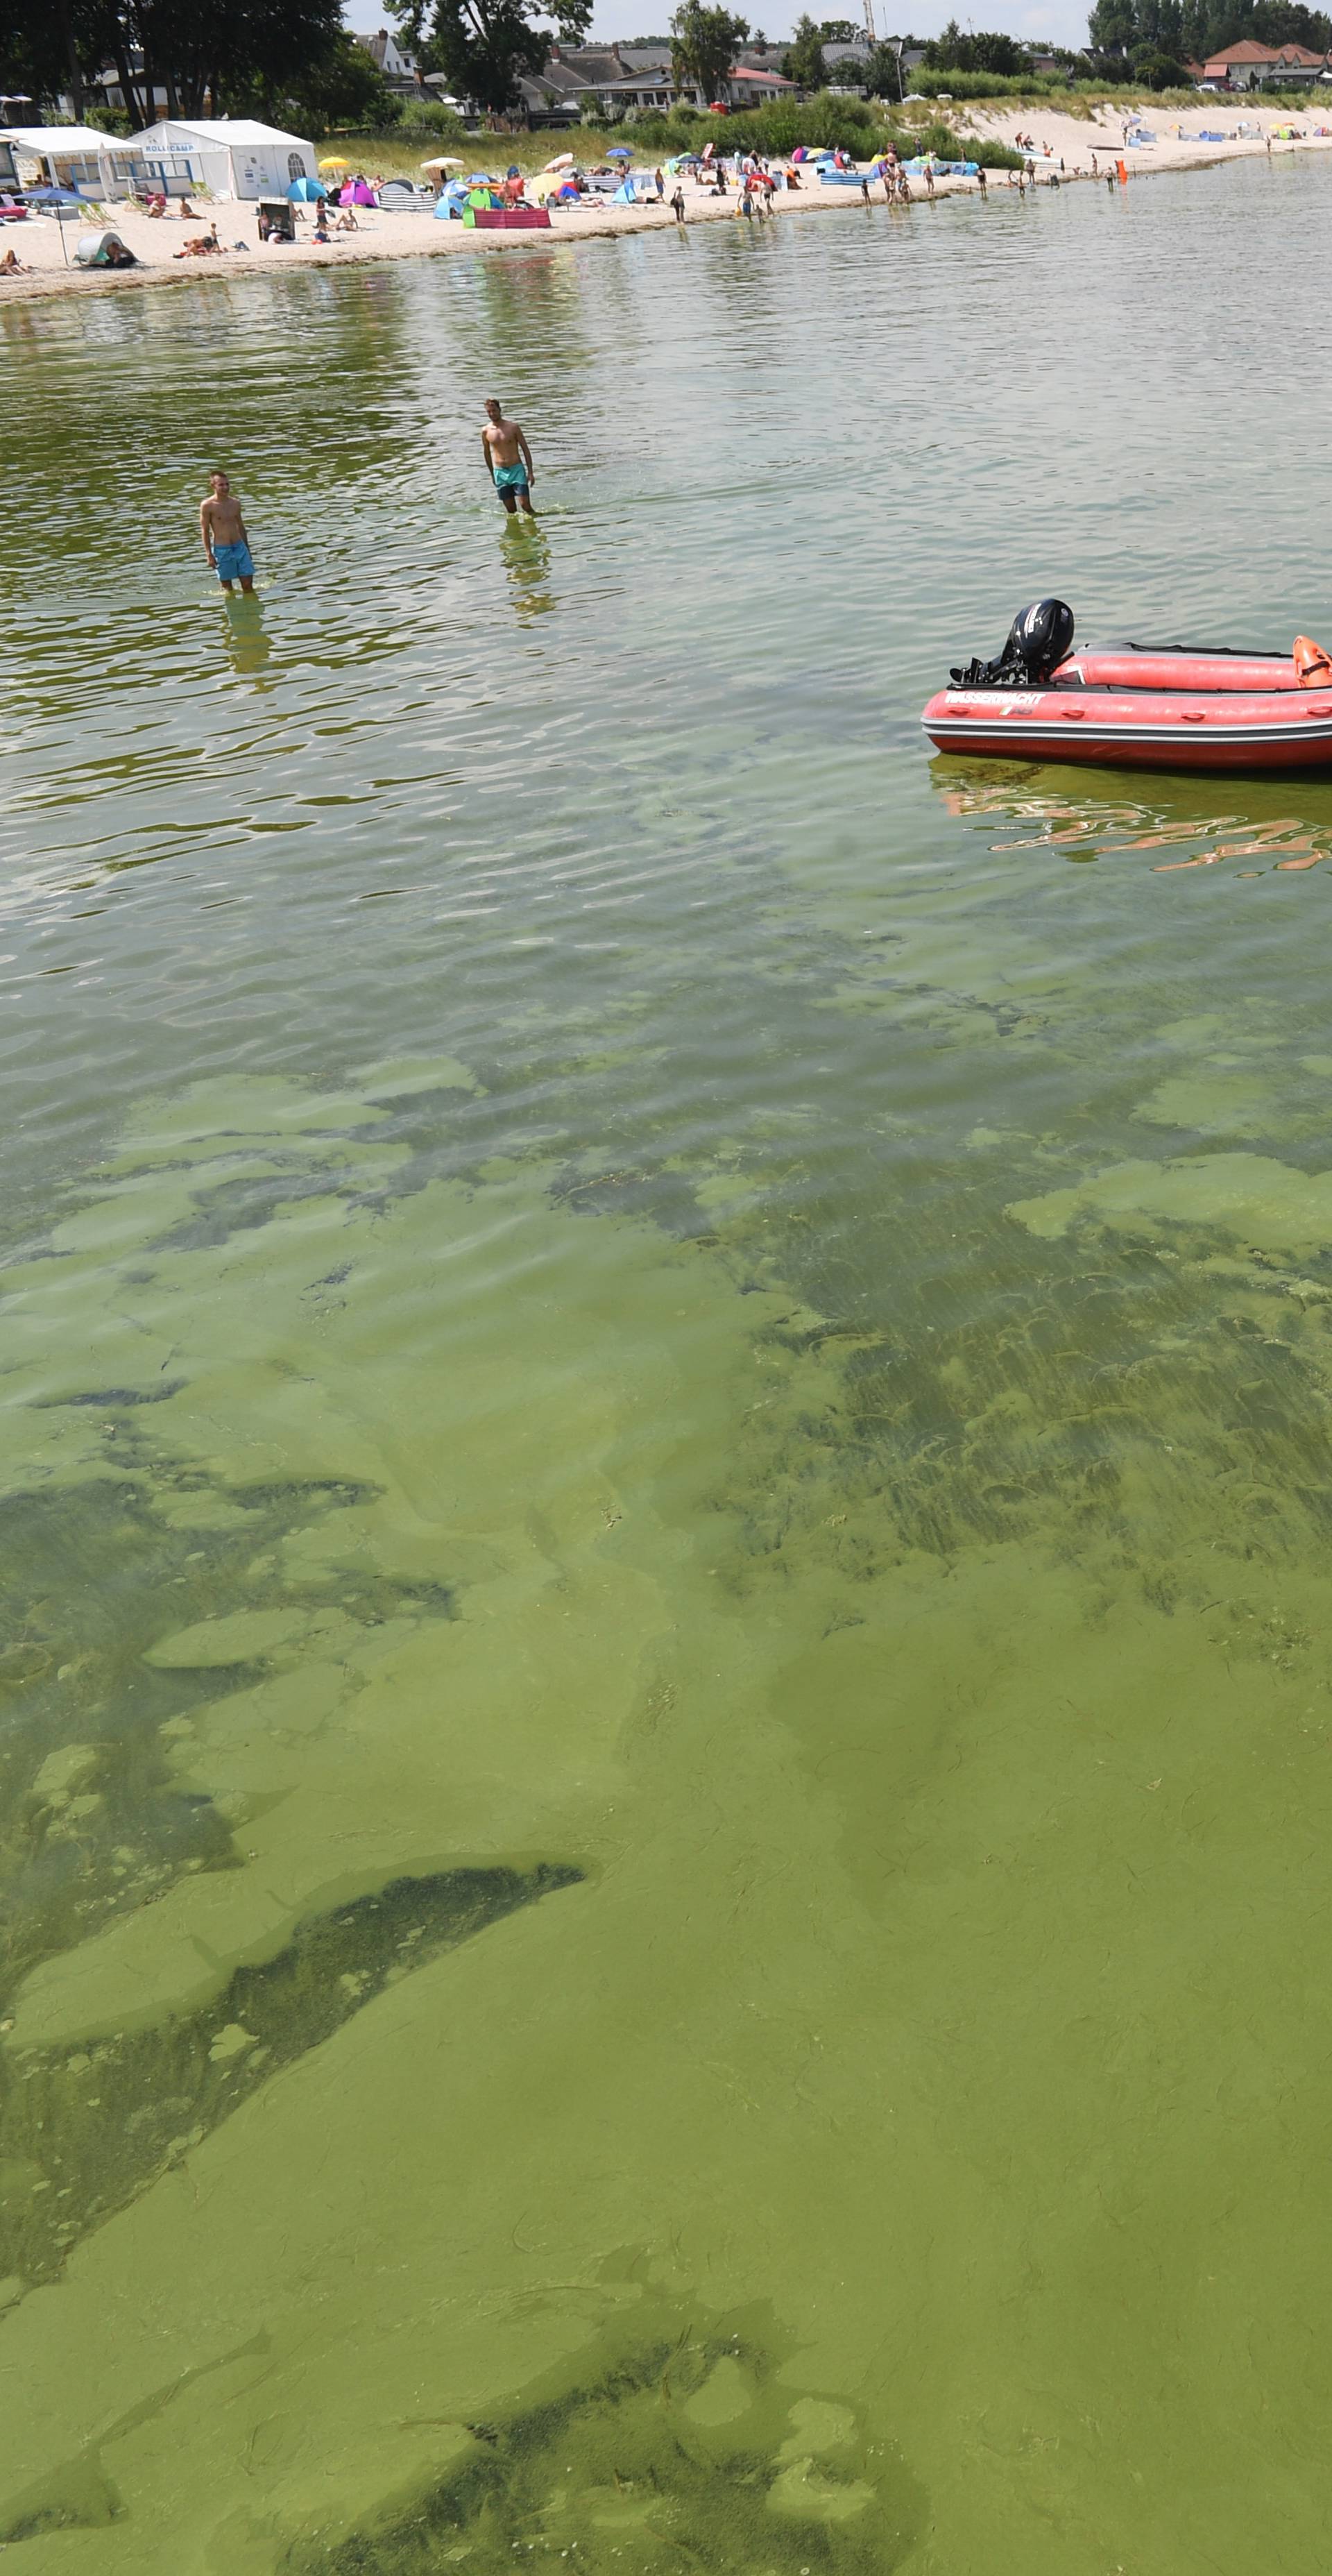 Green algae in Lubmin